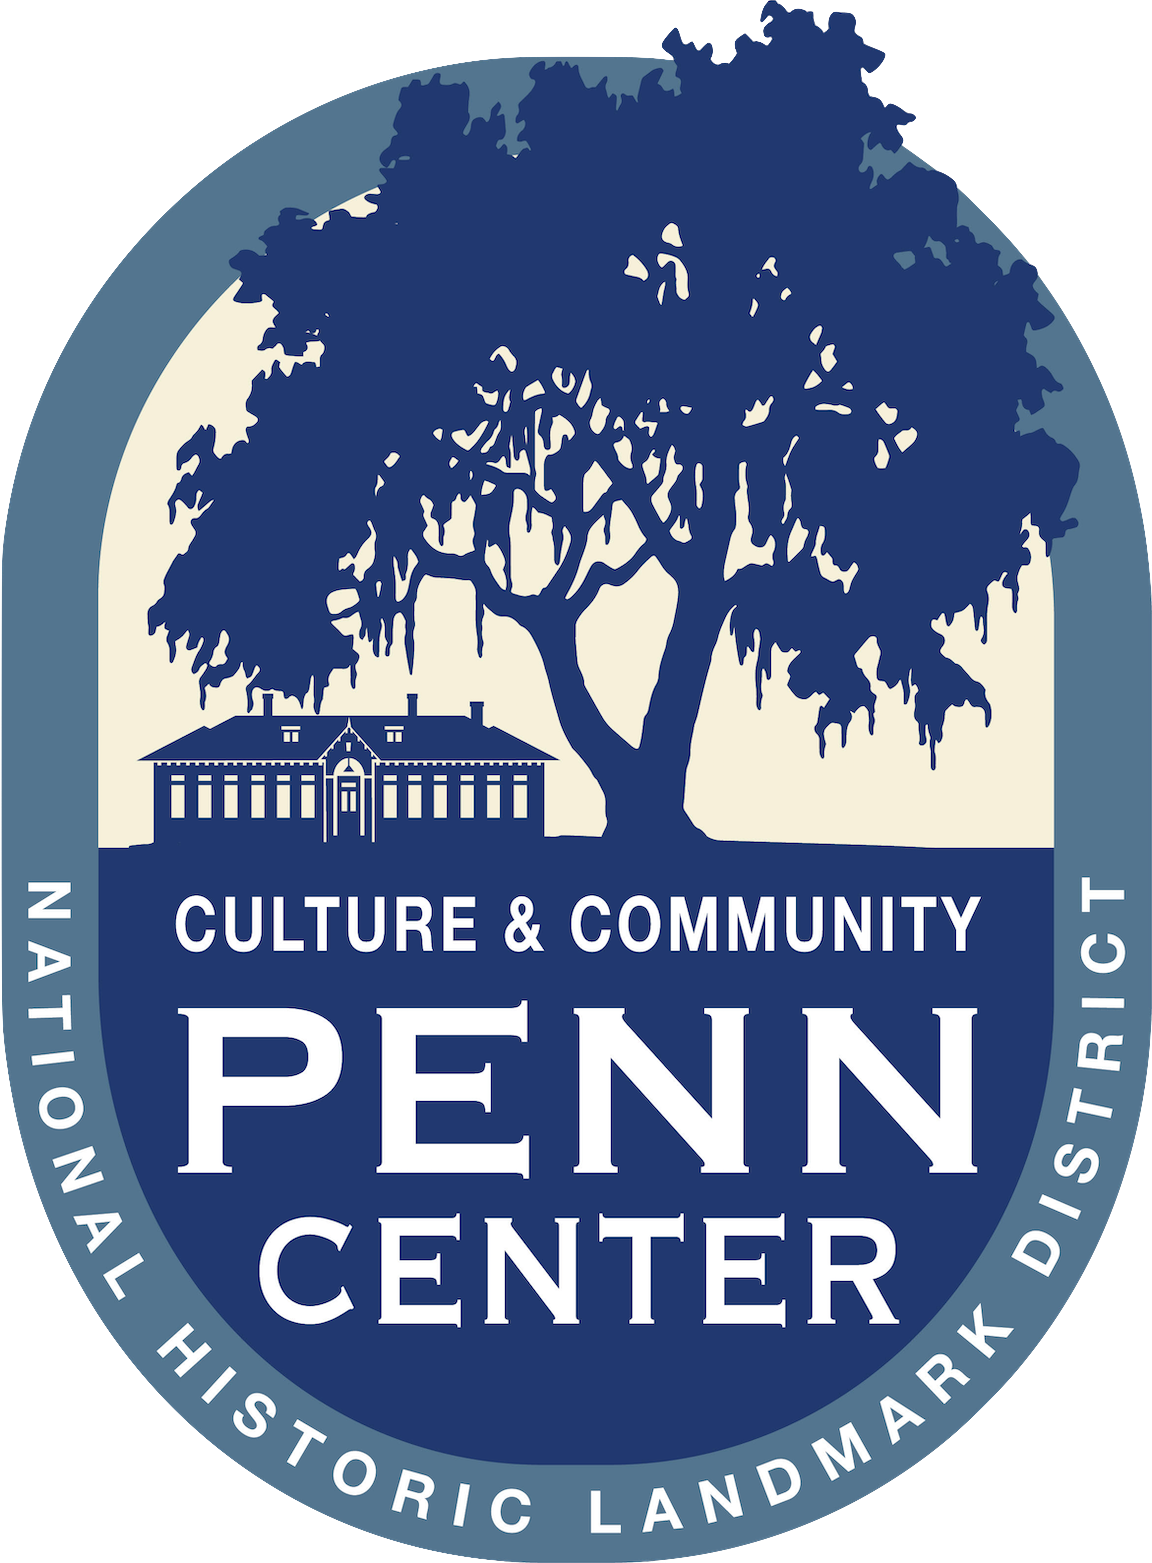 Penn Center